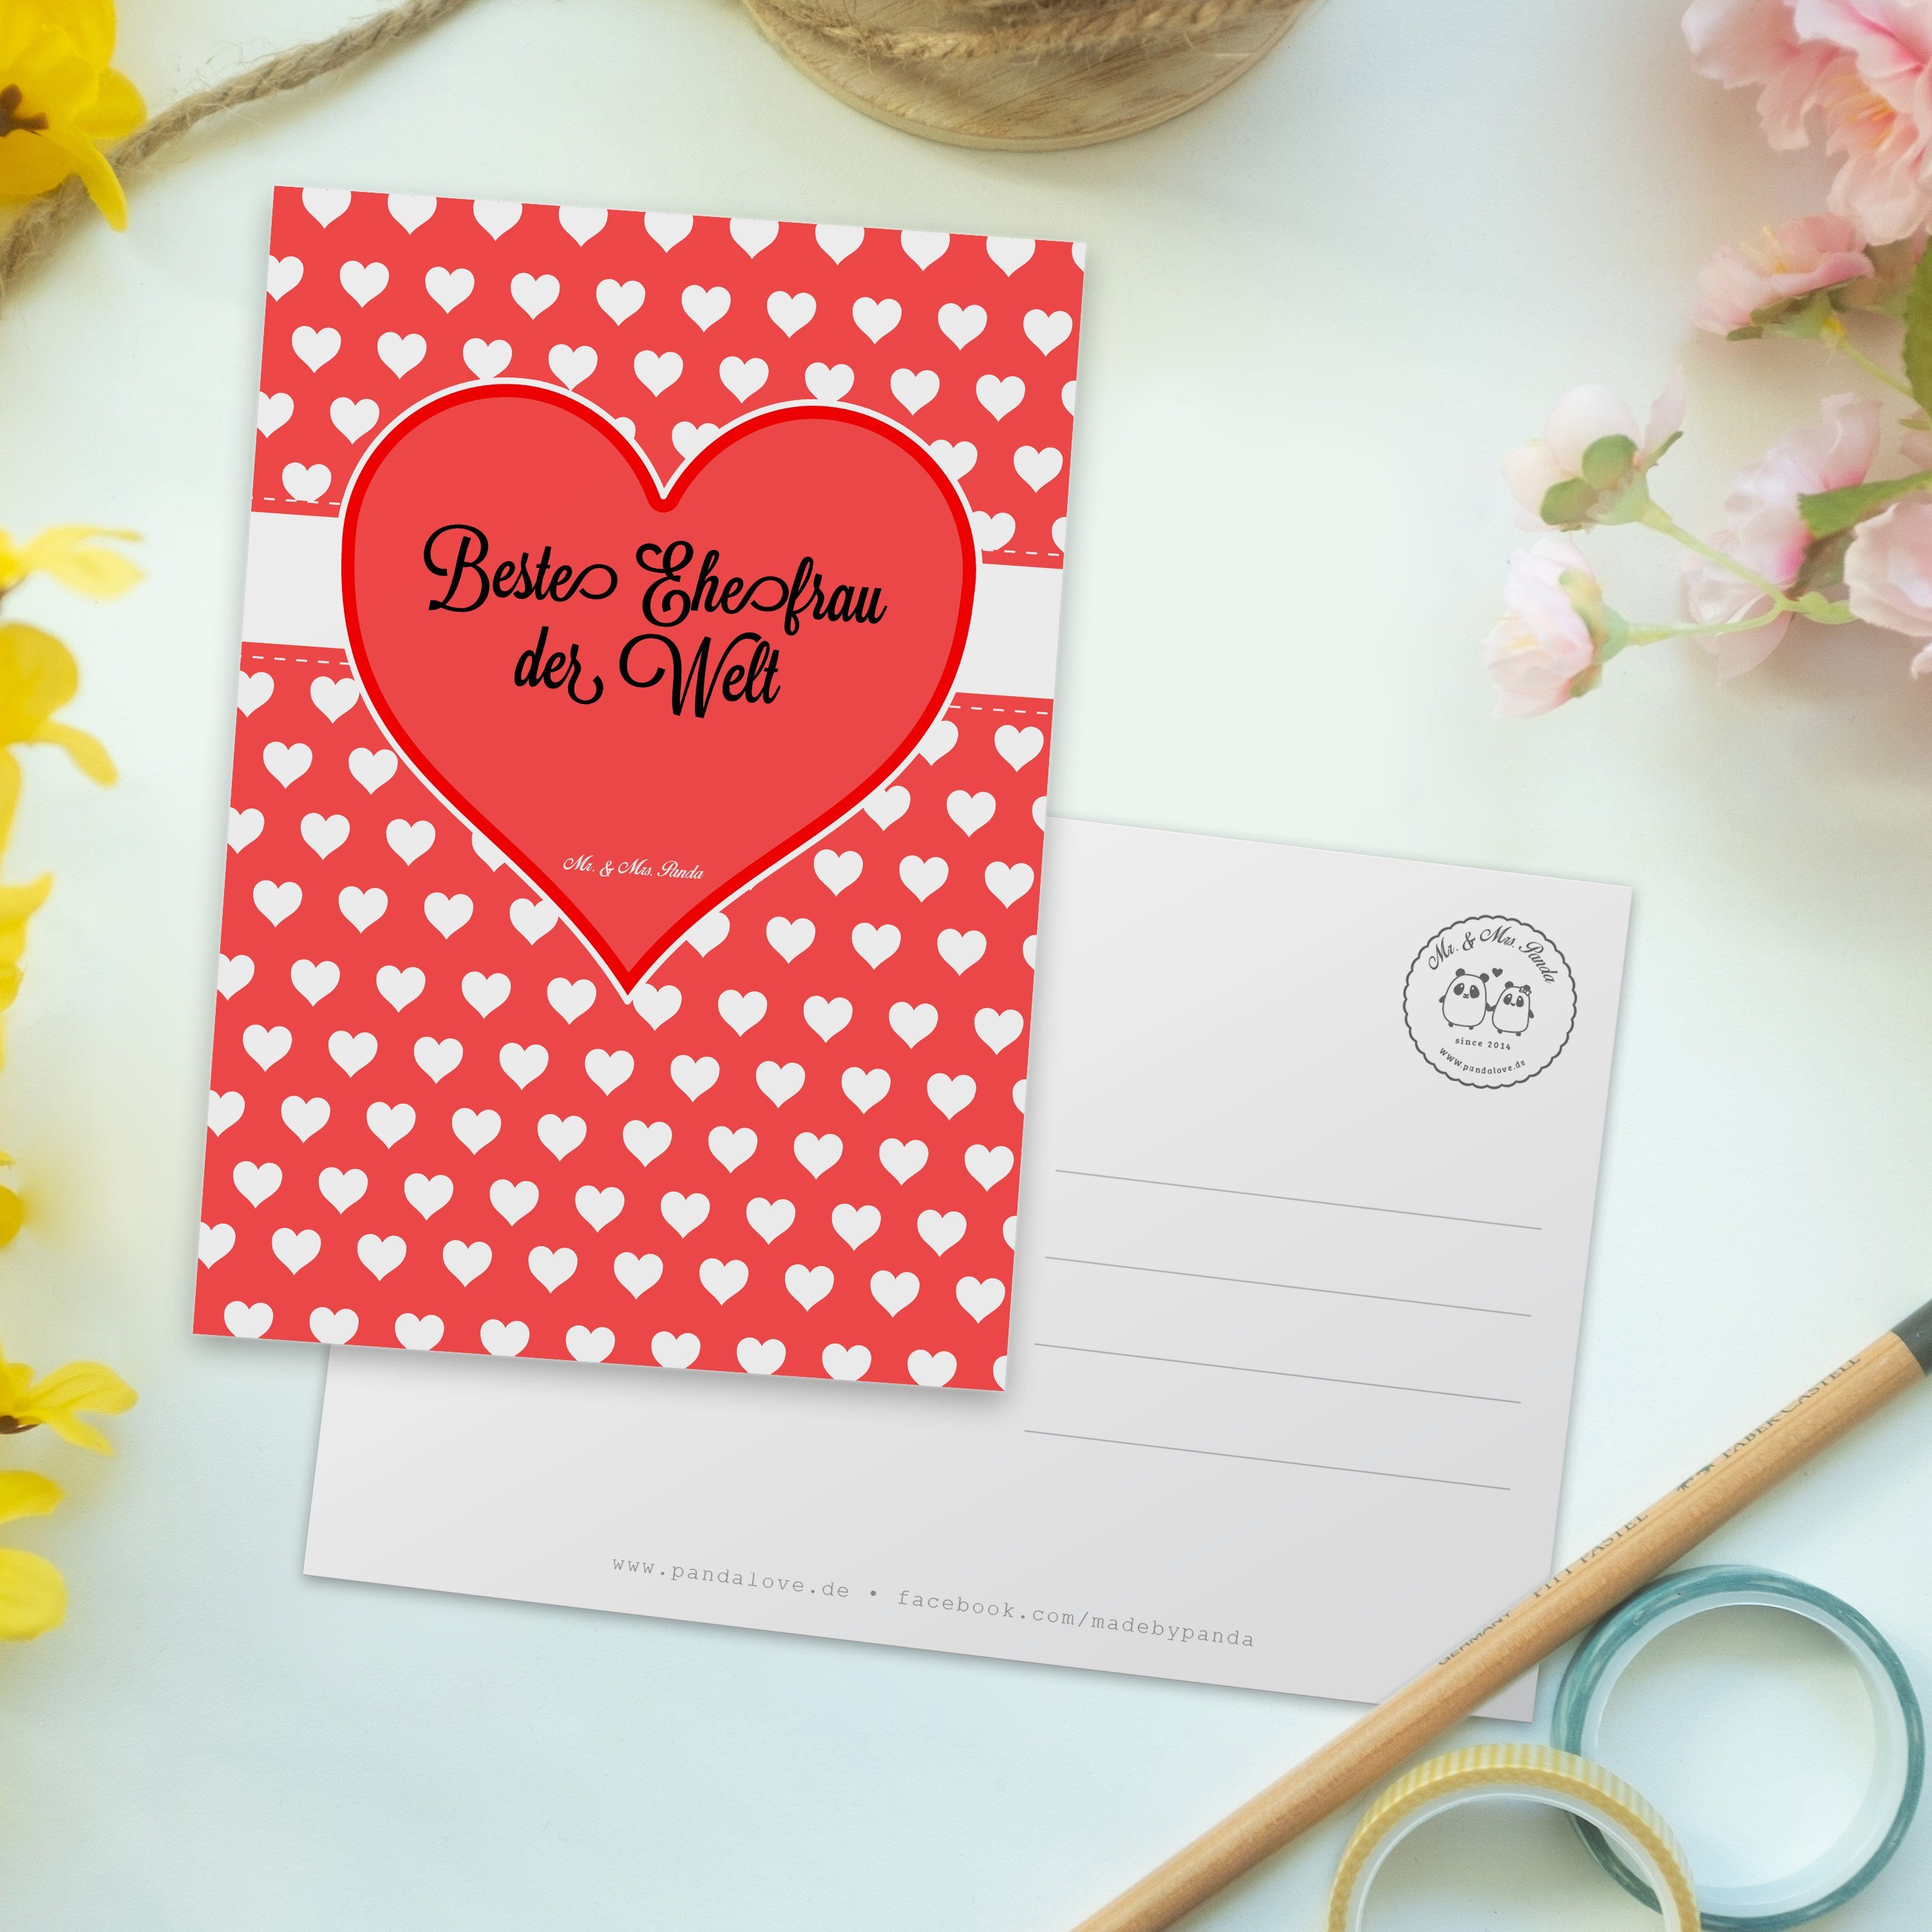 Mr. & Mrs. Panda Postkarte Einladungskarte, Geschenk, Ehefrau Dankeskarte, - Hochzeit, Ansichtsk